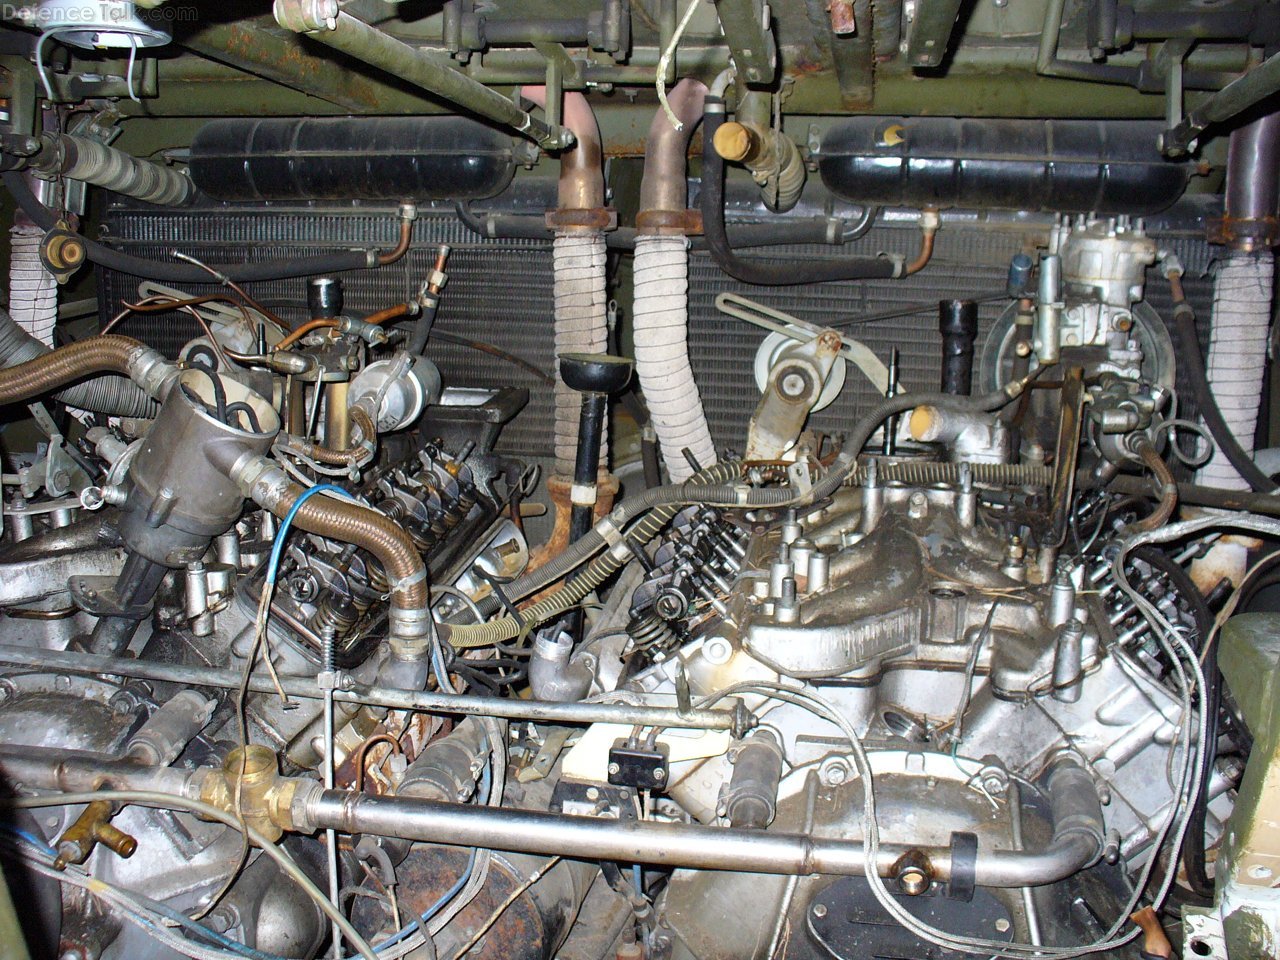 BTR-70 engine